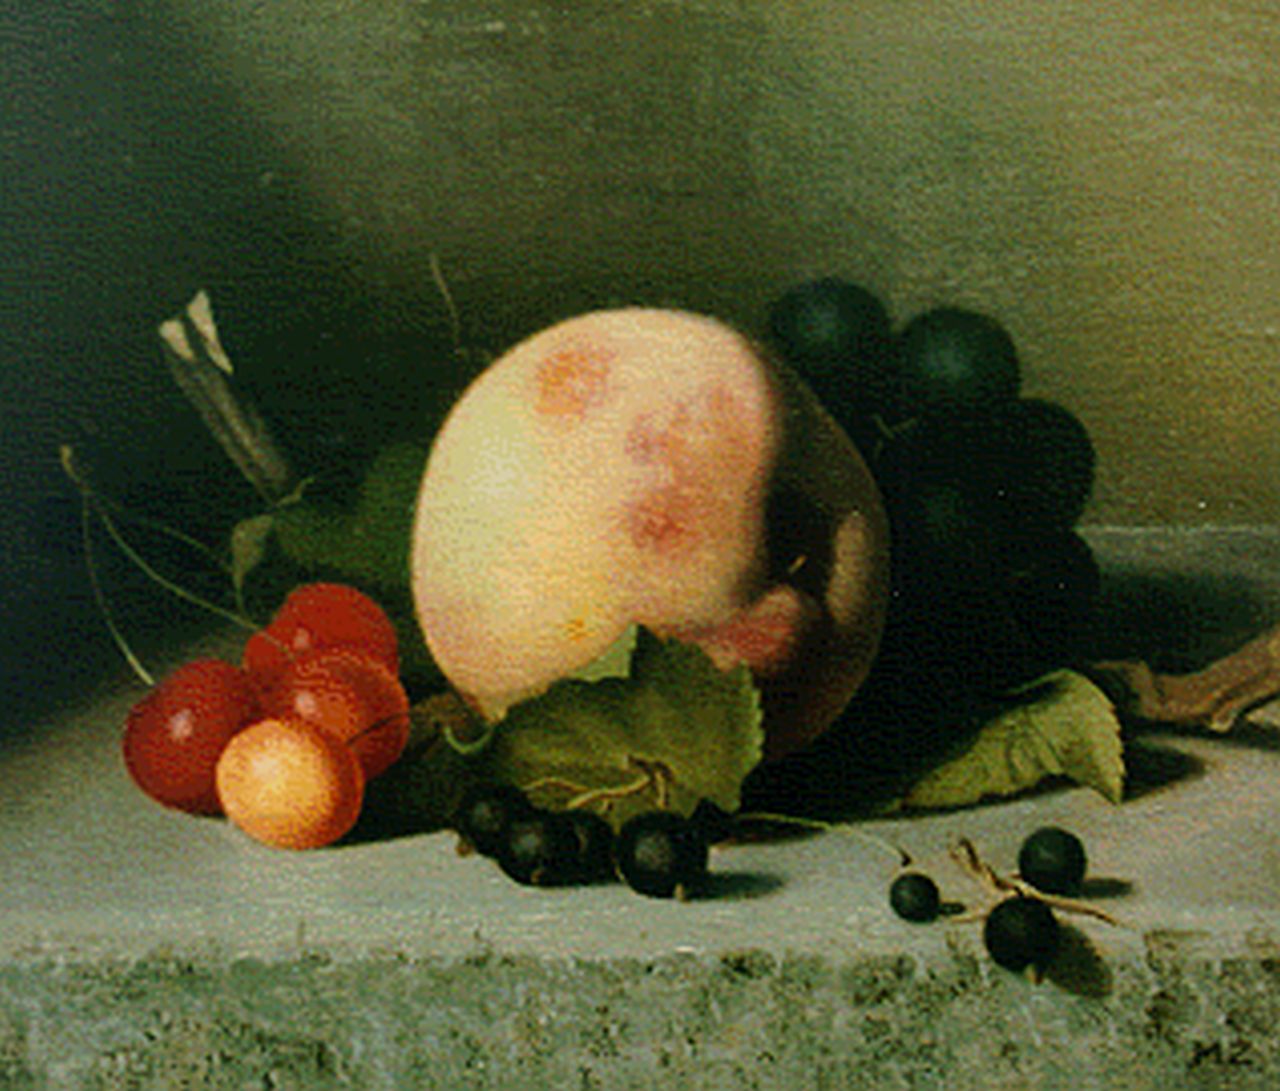 Hynckes-Zahn M.  | Marguerite Hynckes-Zahn, A still life with cherries, grapes and a peach, 21,1 x 25,0 cm, signed l.r. with initials